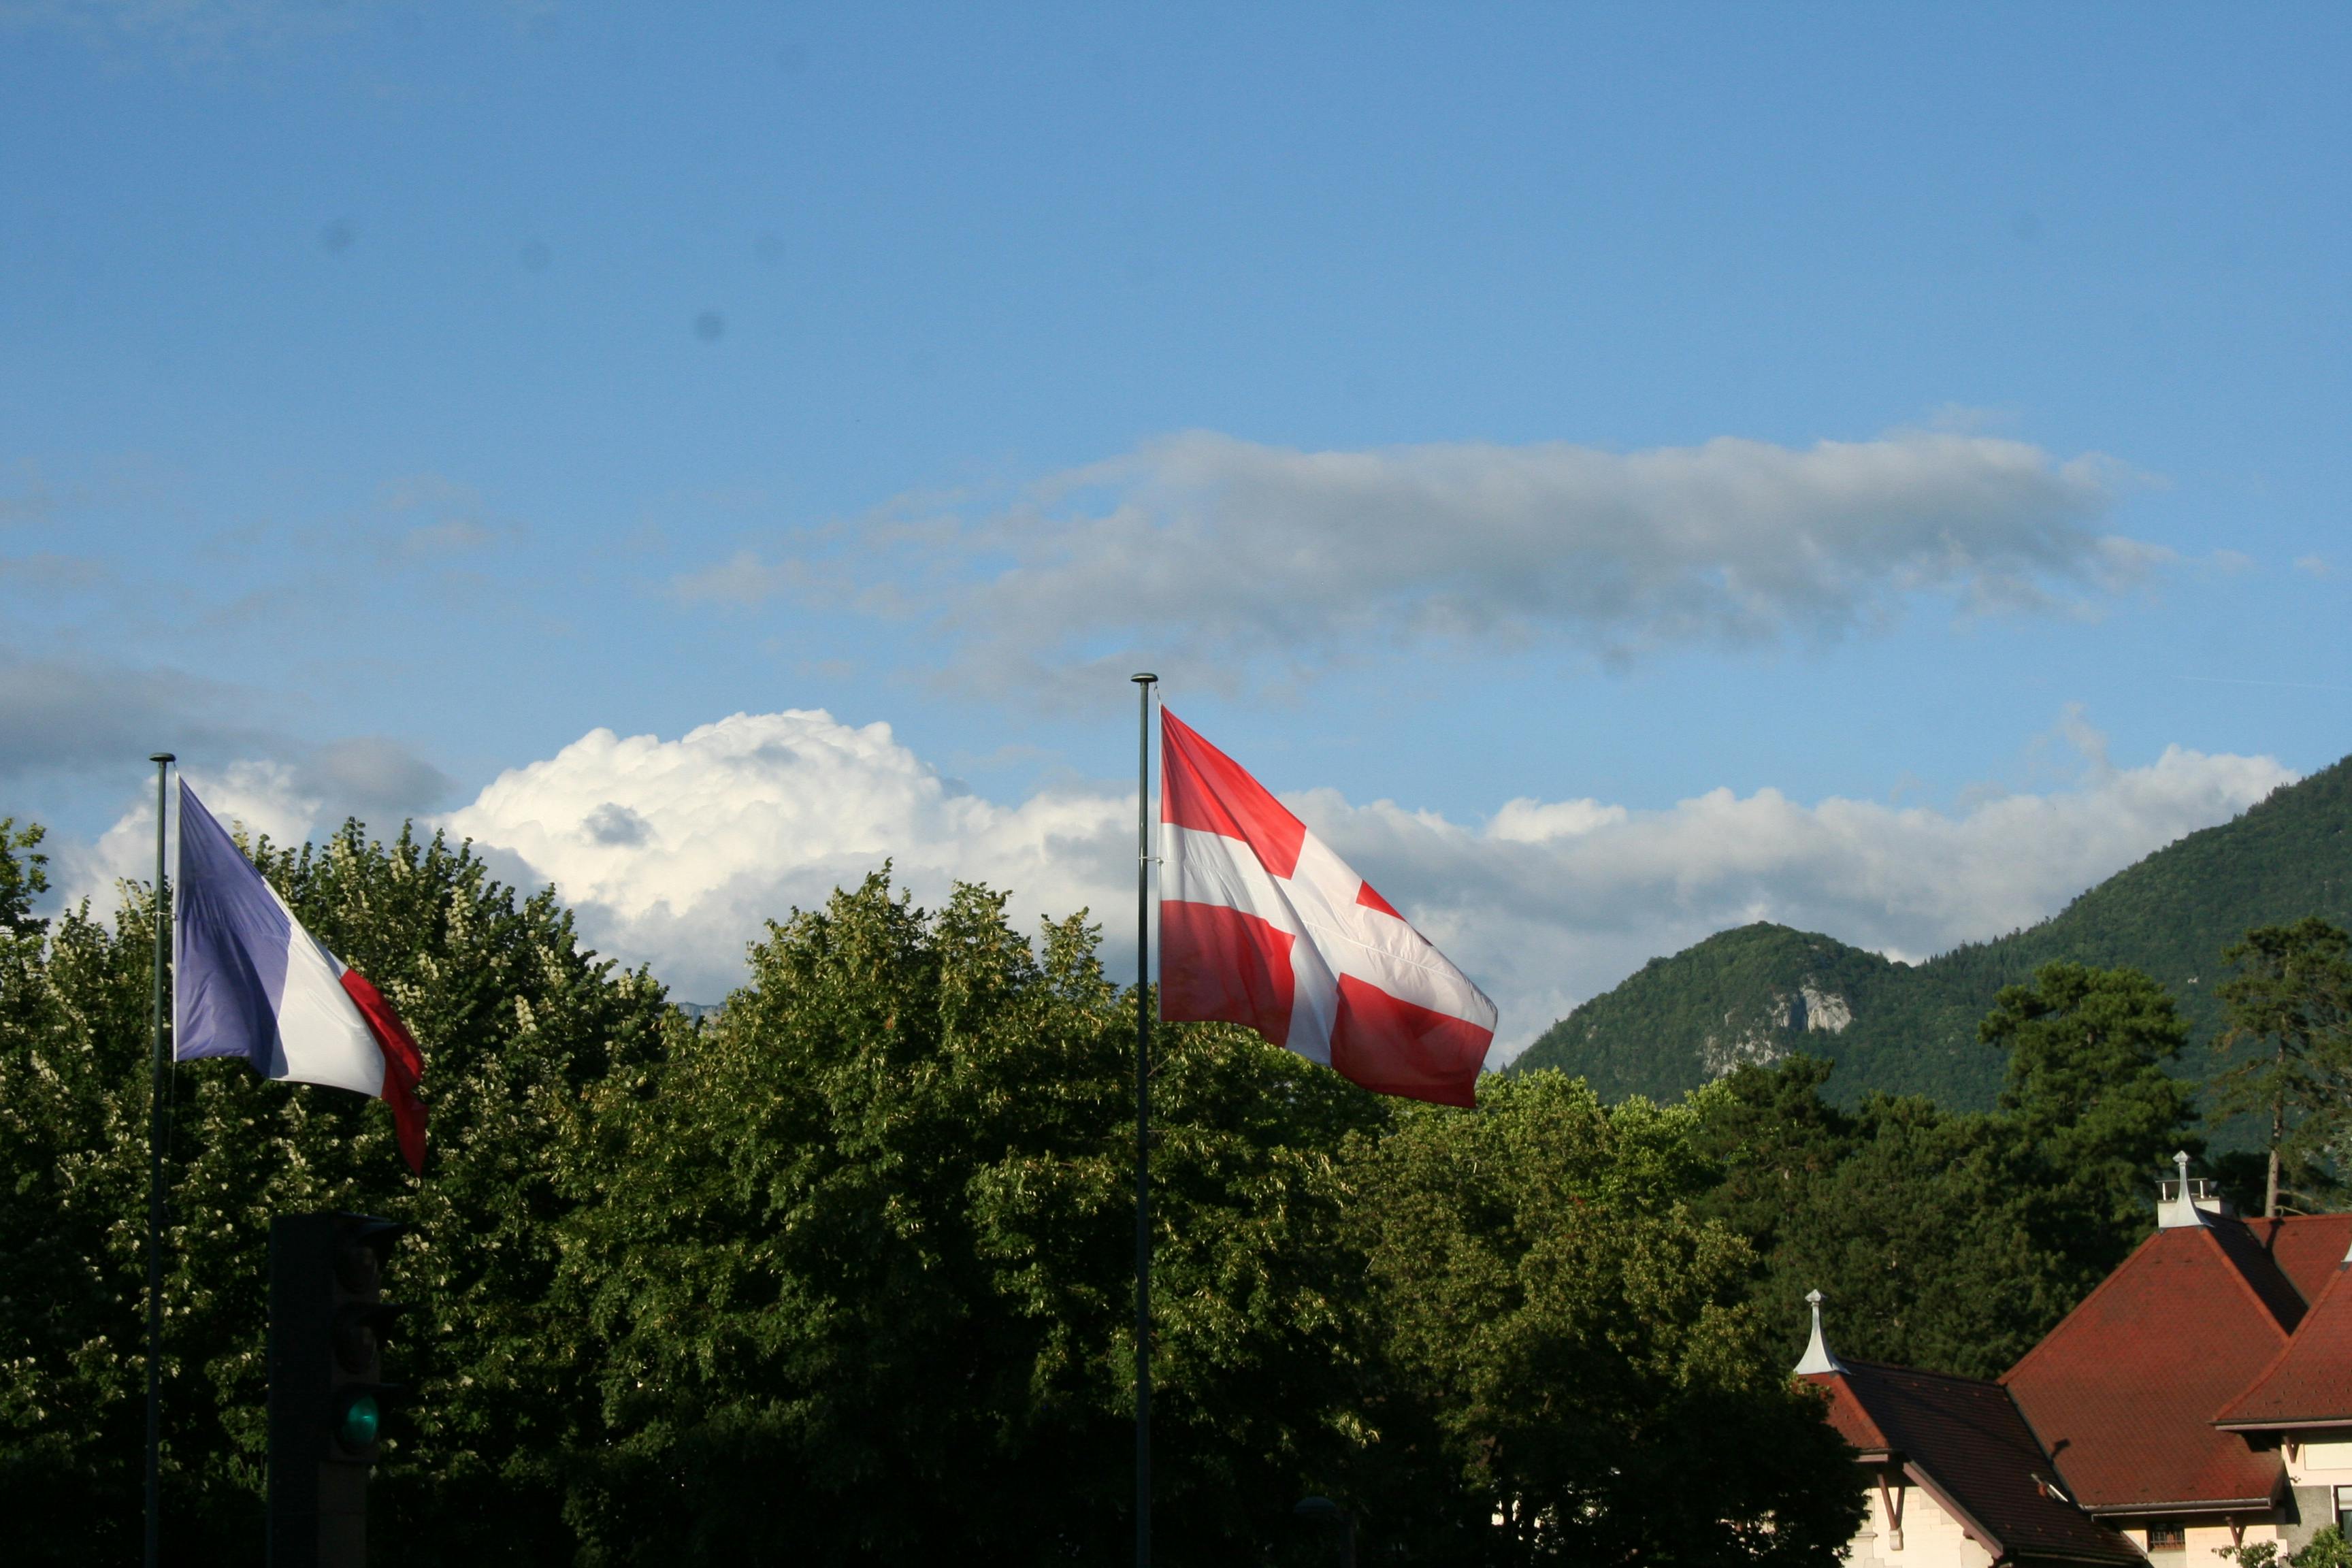 Switzerland Flag on Pole \u00b7 Free Stock Photo